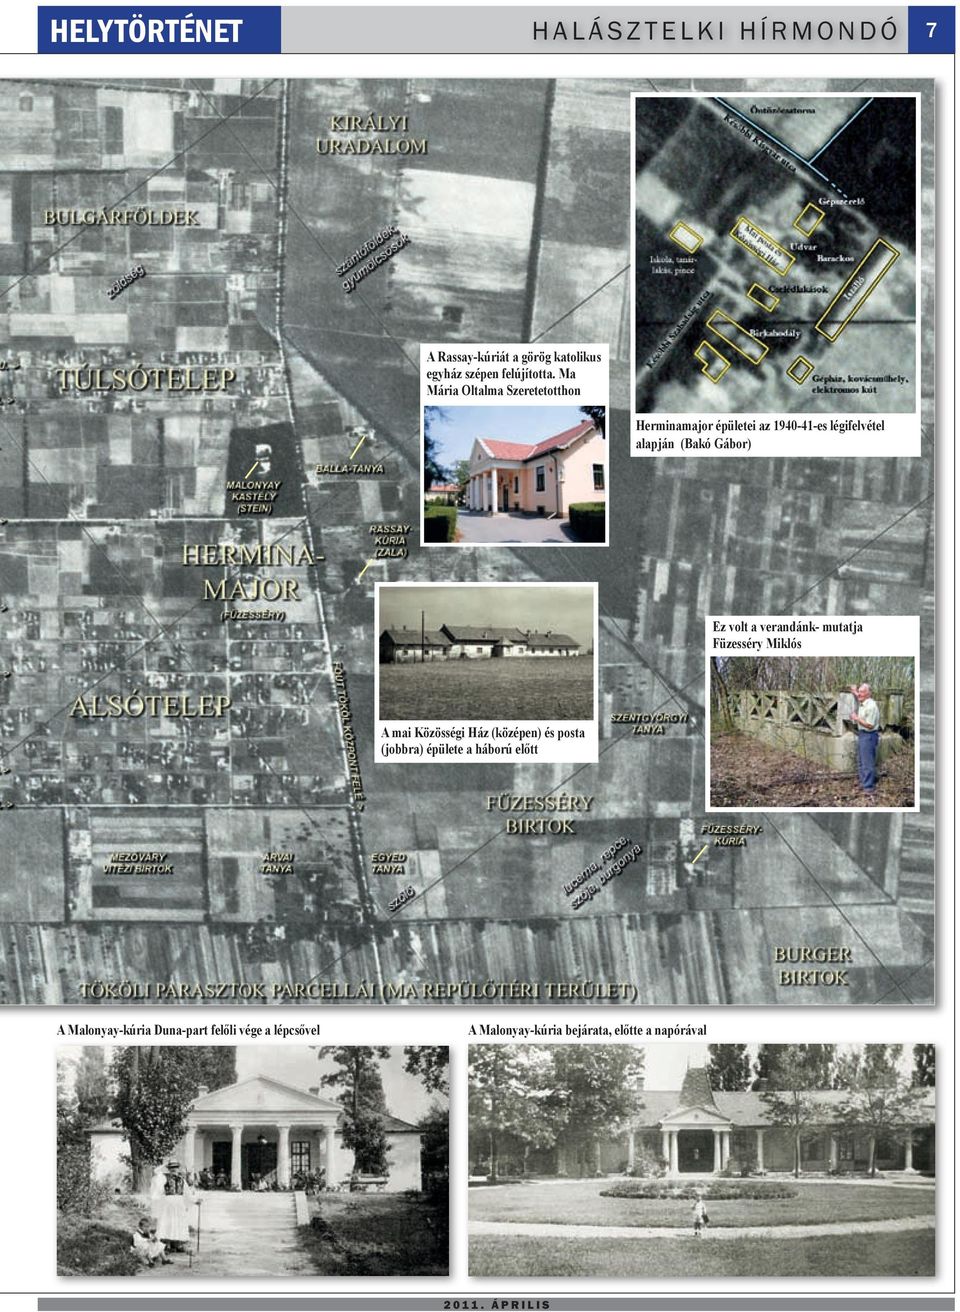 Ma Mária Oltalma Szeretetotthon Herminamajor épületei az 1940-41-es légifelvétel alapján (Bakó Gábor) Ez